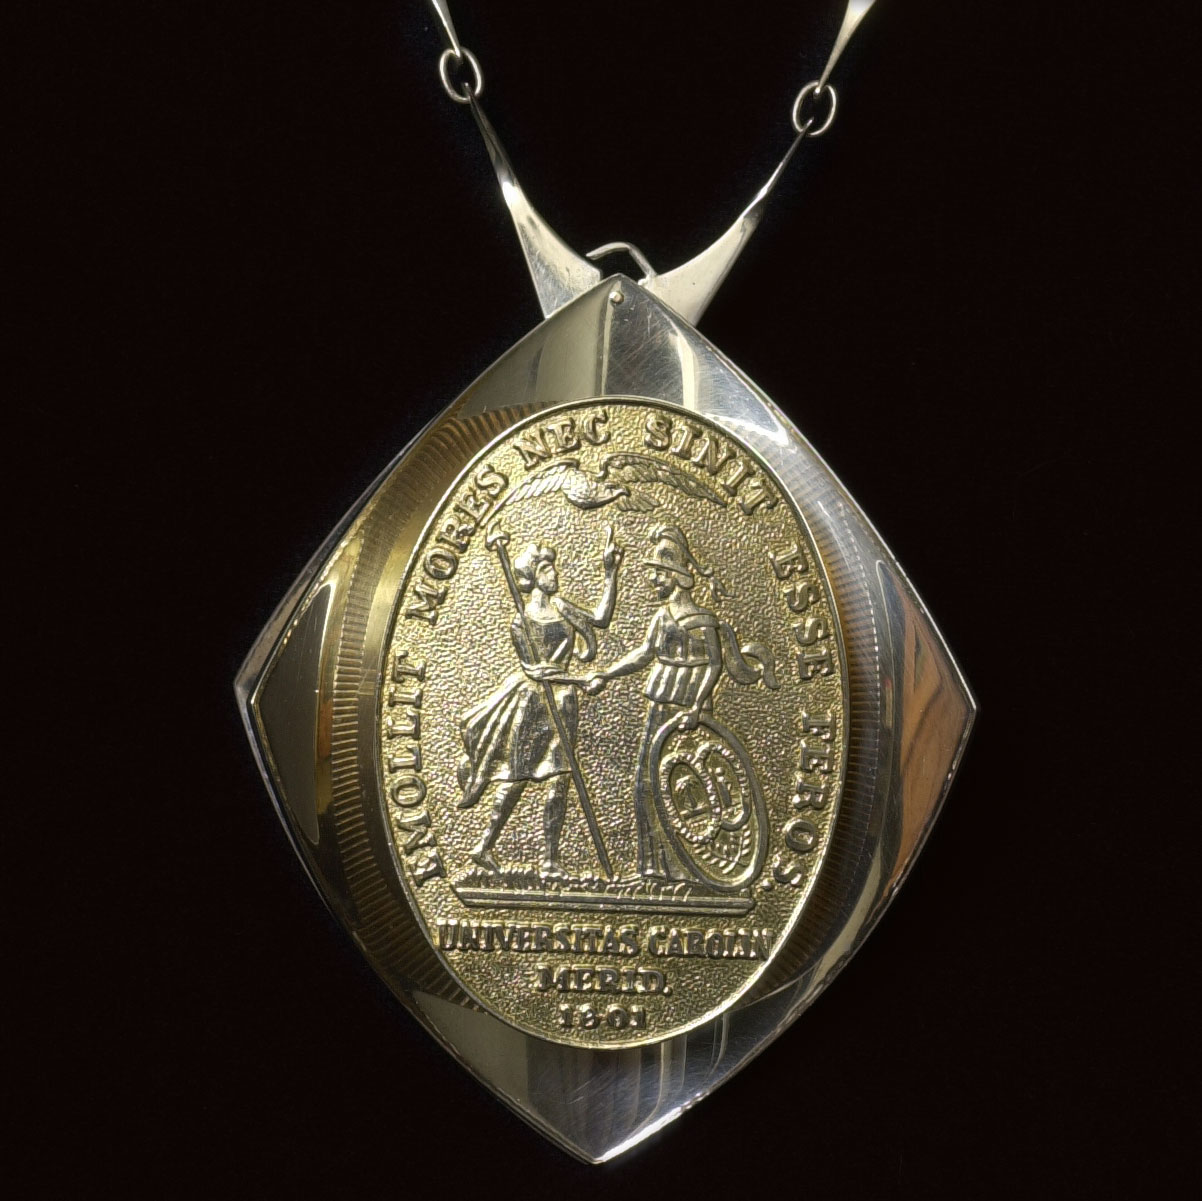 President's Medallion